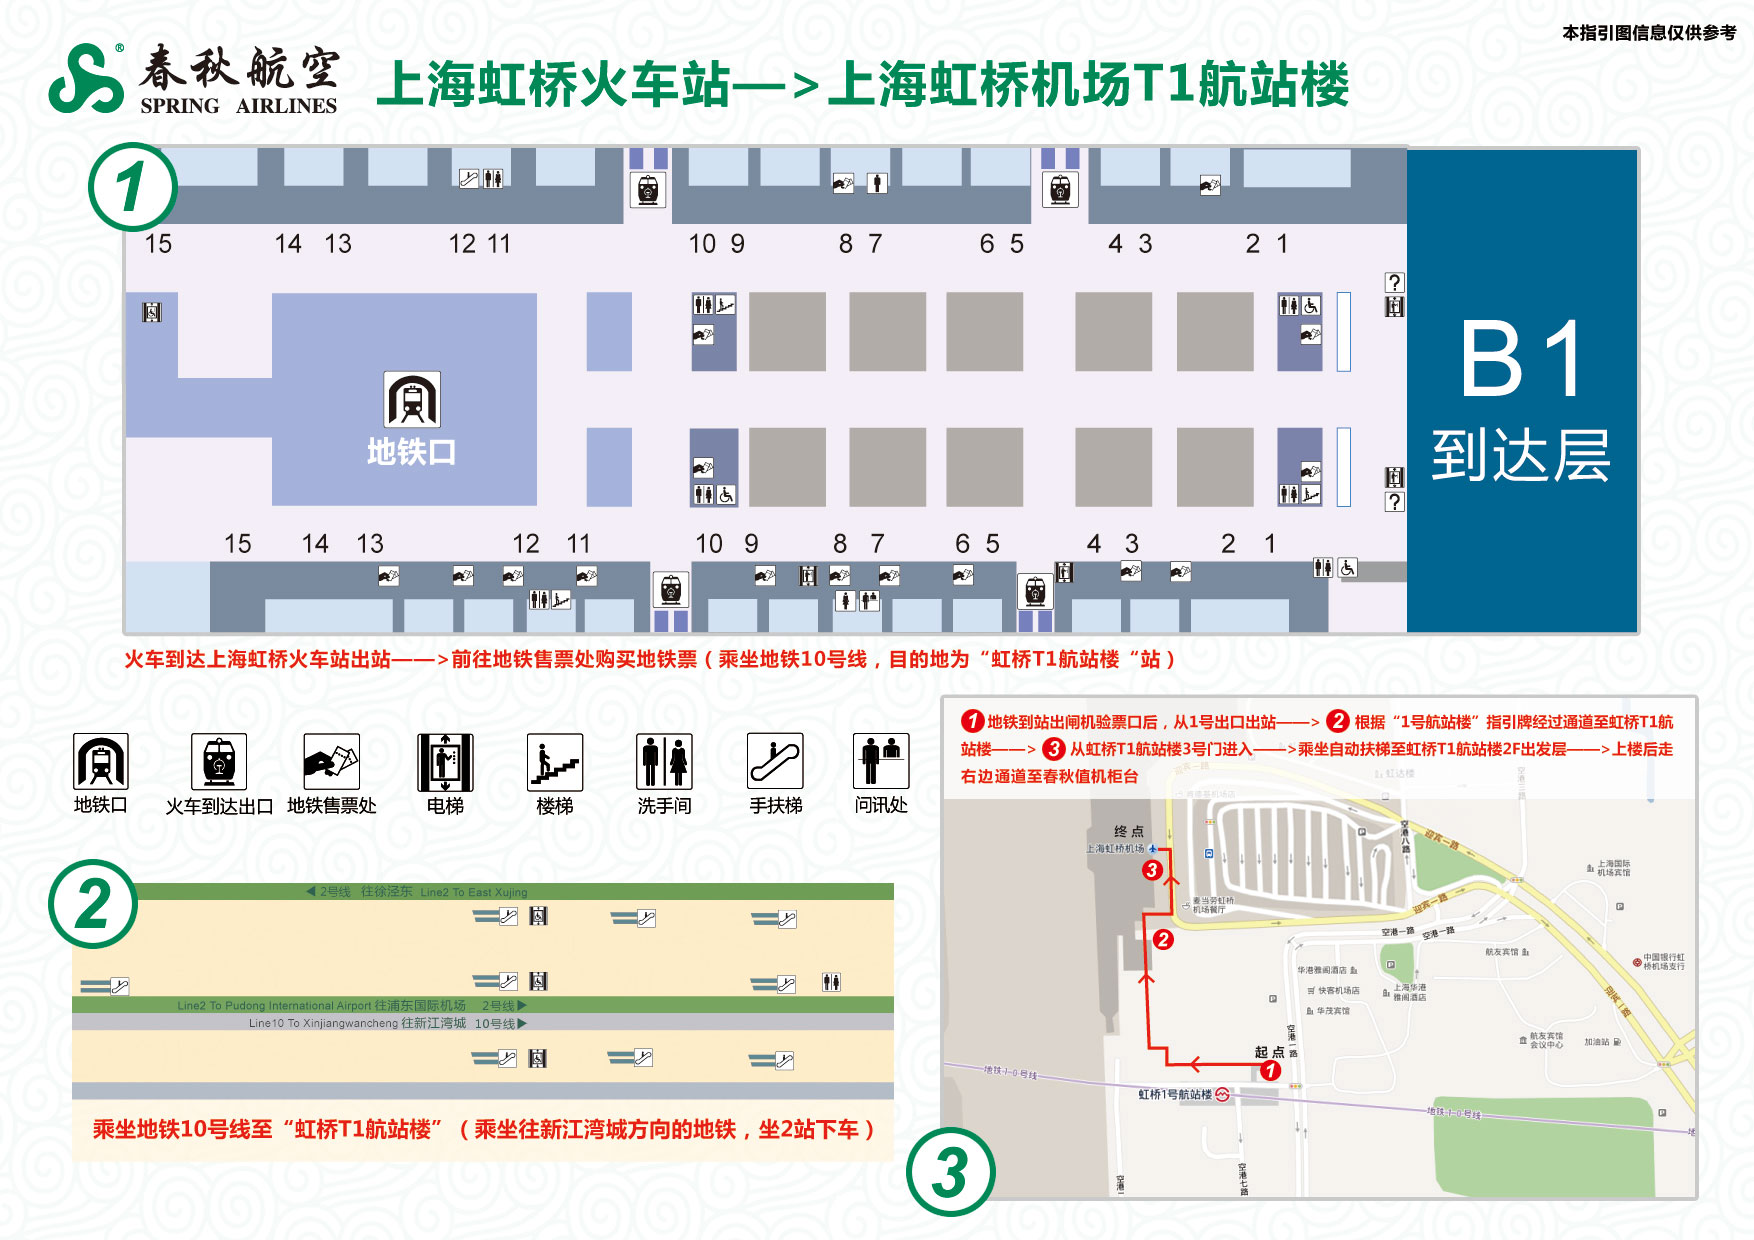 上海虹桥机场2号航站楼到衡山路地铁站2号口怎么走